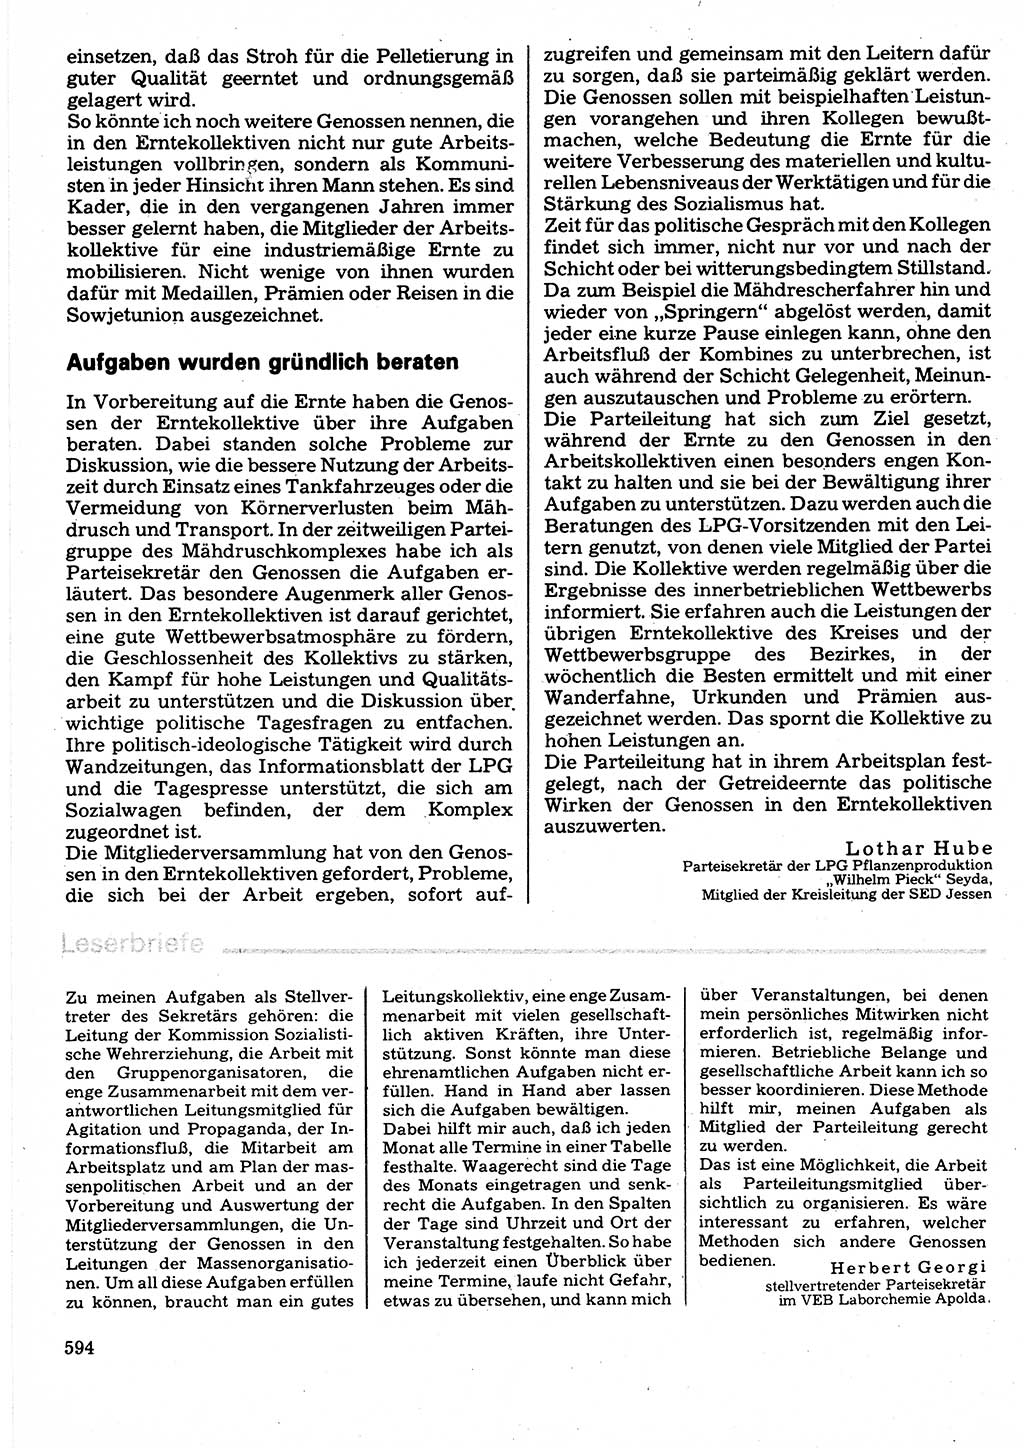 Neuer Weg (NW), Organ des Zentralkomitees (ZK) der SED (Sozialistische Einheitspartei Deutschlands) für Fragen des Parteilebens, 32. Jahrgang [Deutsche Demokratische Republik (DDR)] 1977, Seite 594 (NW ZK SED DDR 1977, S. 594)